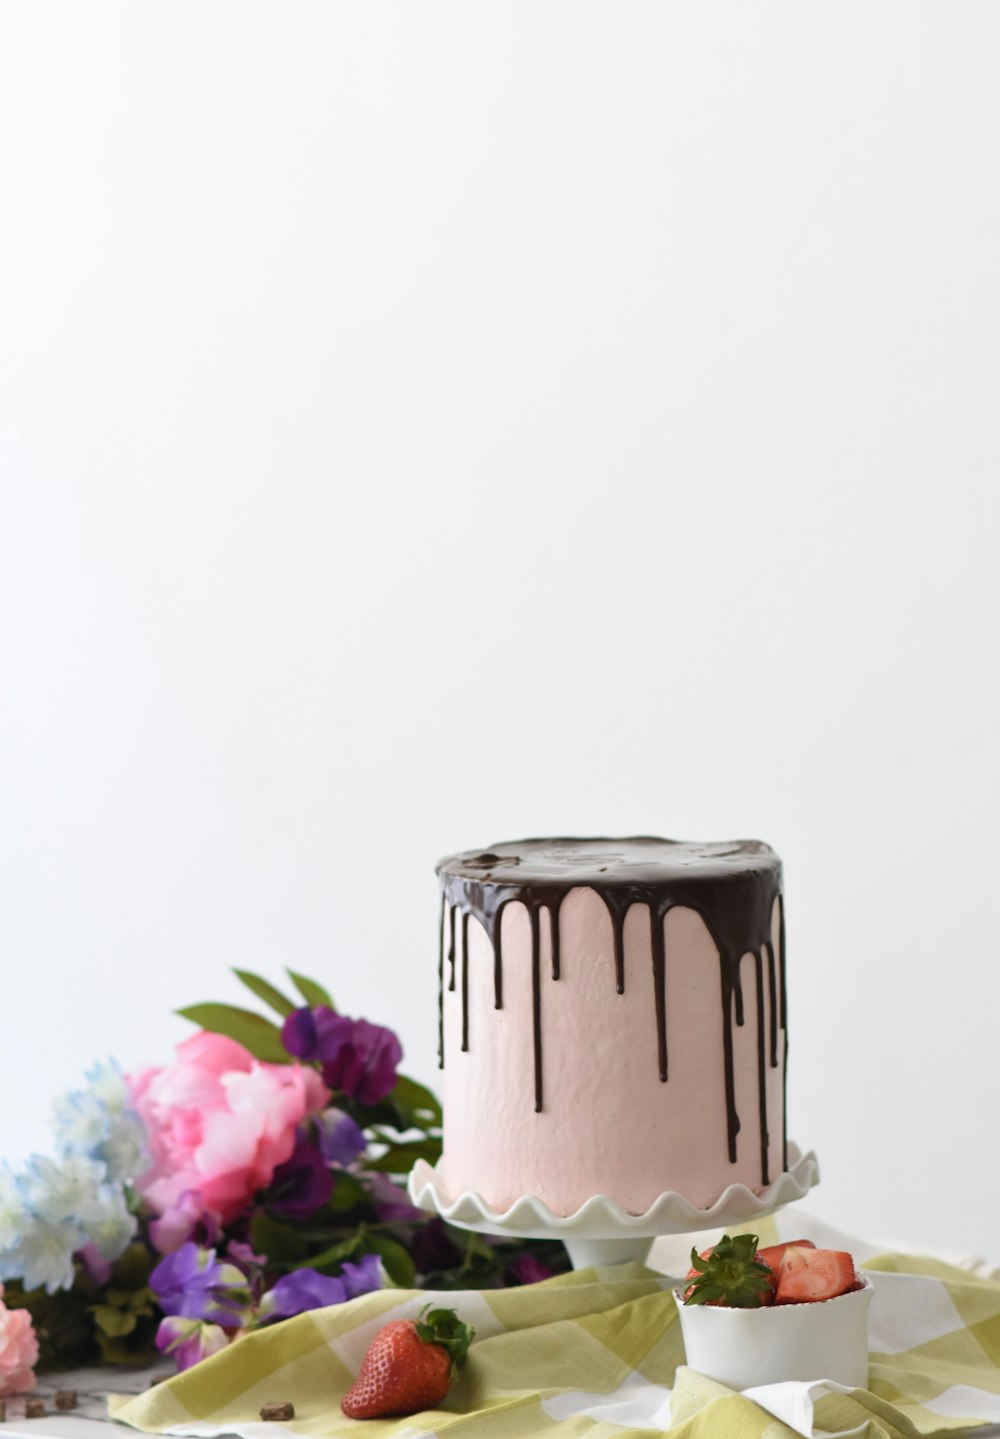 round whipped-cream cake